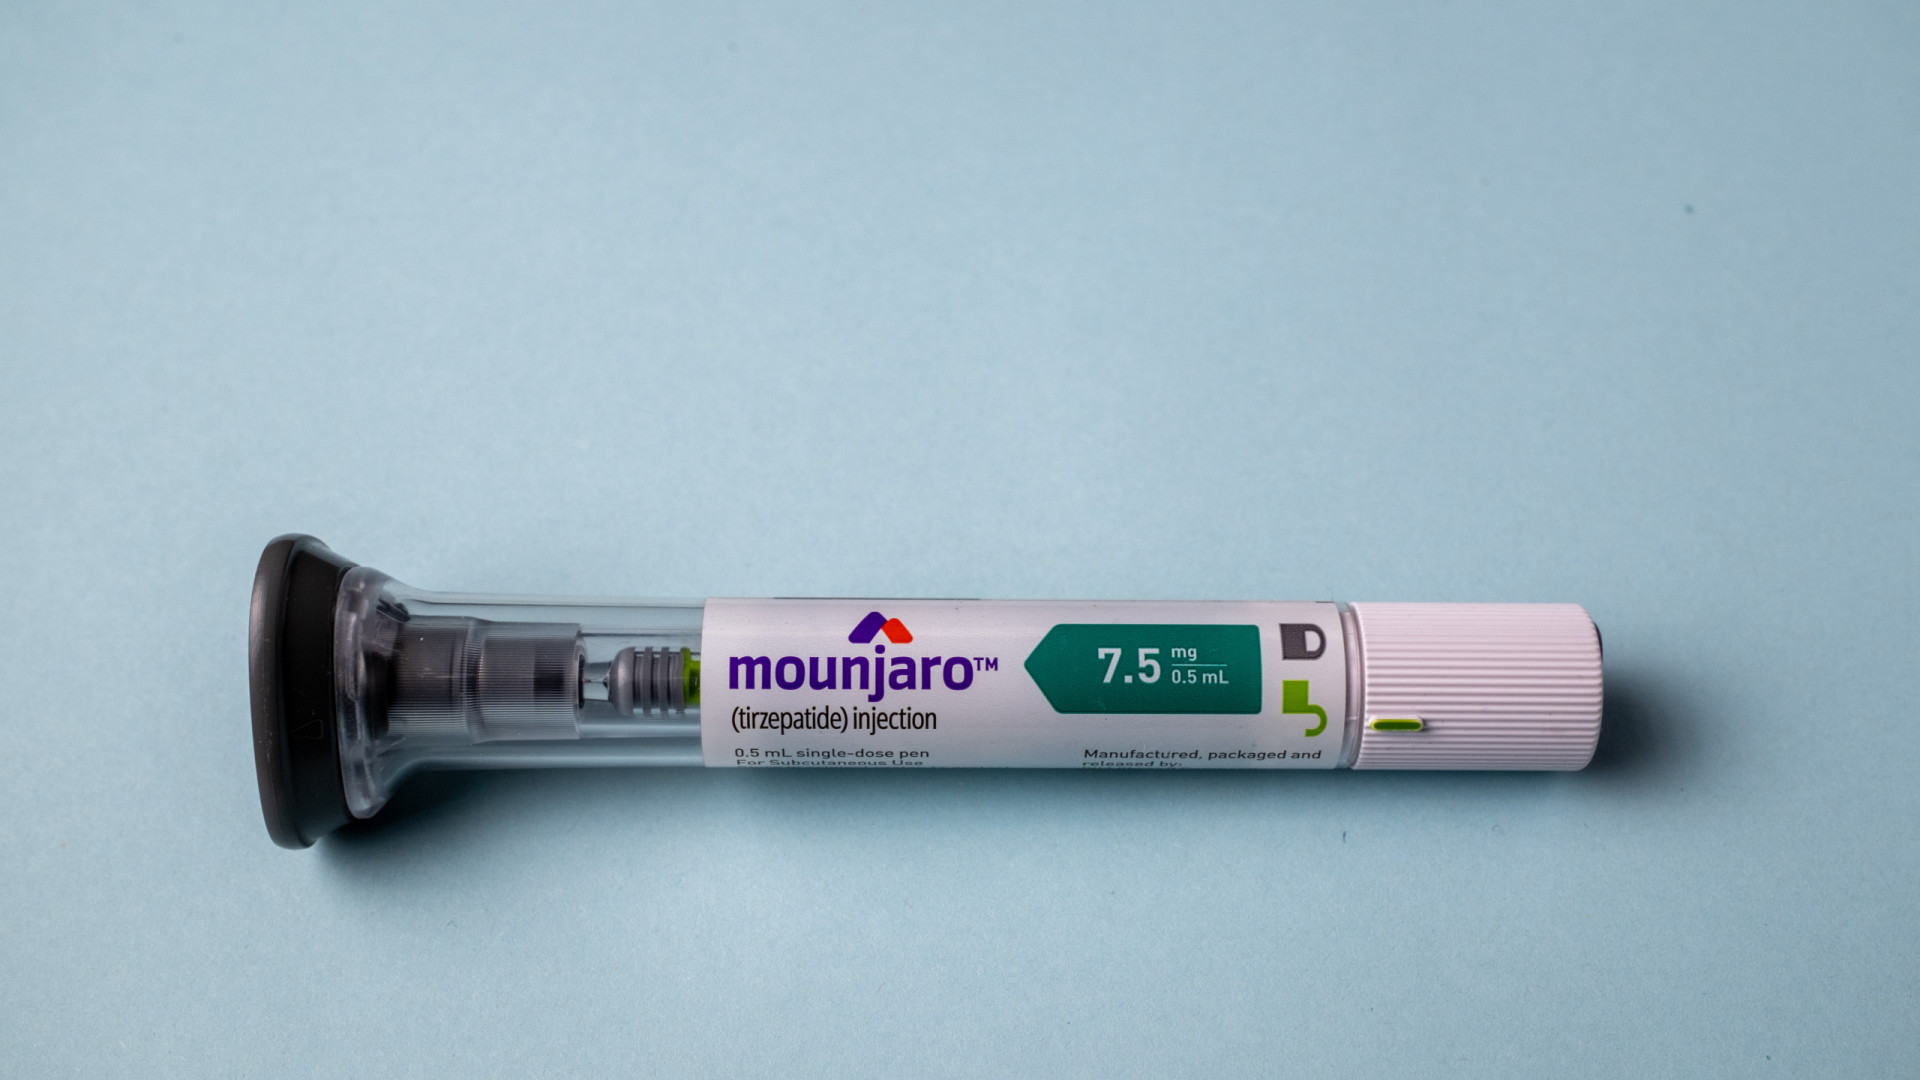 Entenda o que é Mounjaro, remédio usado no emagrecimento aprovado pela Anvisa